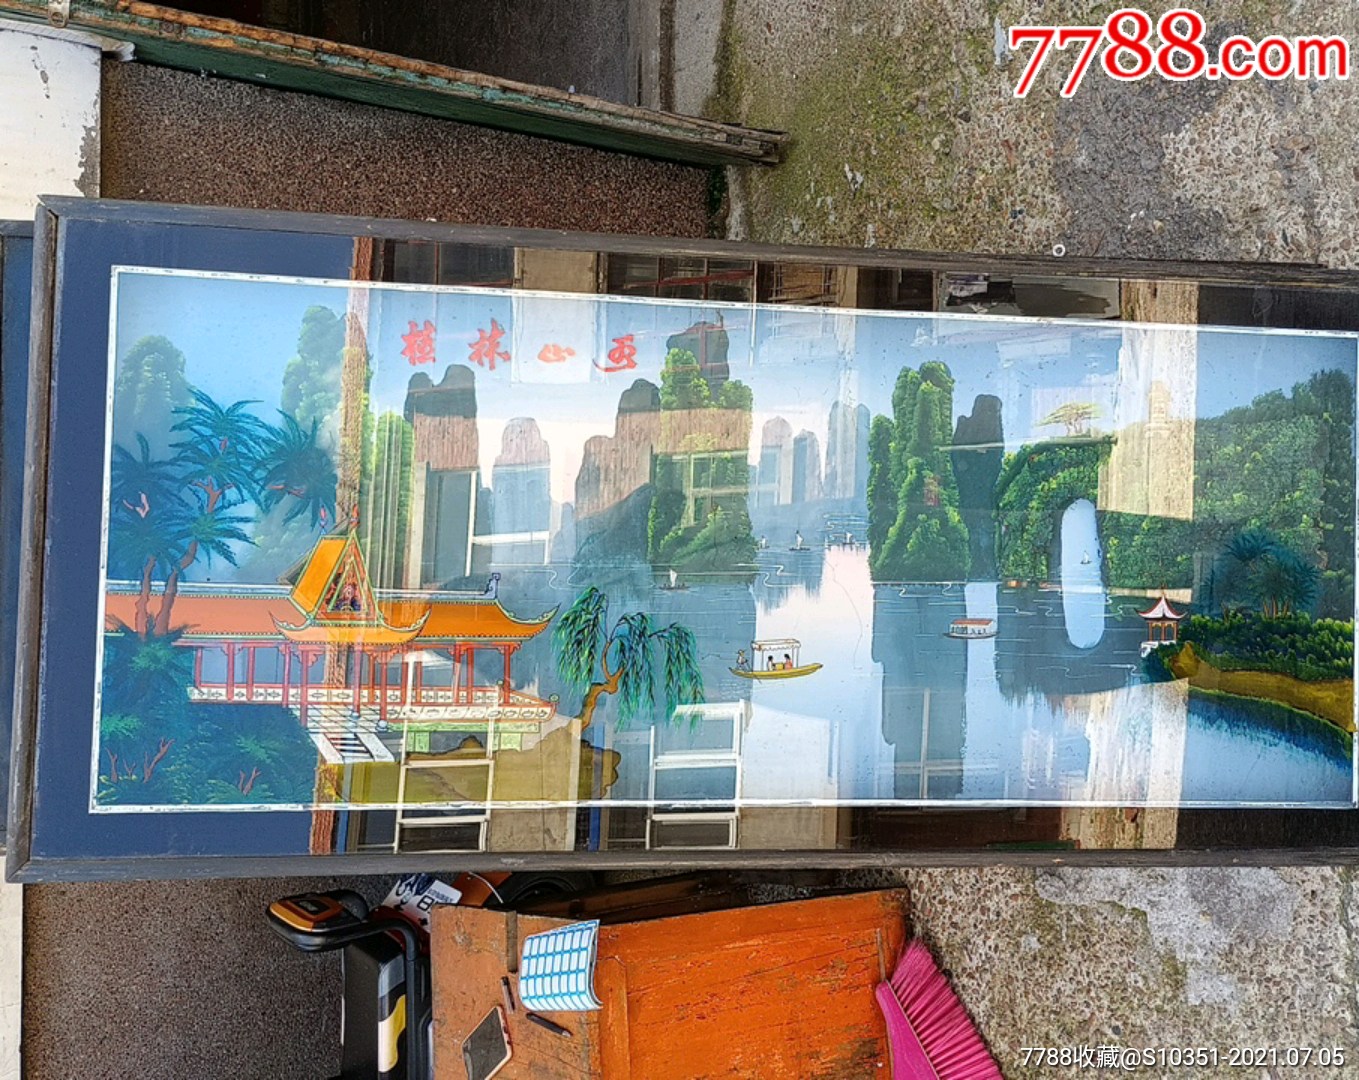 大型玻璃画桂林山水140厘米x63厘米